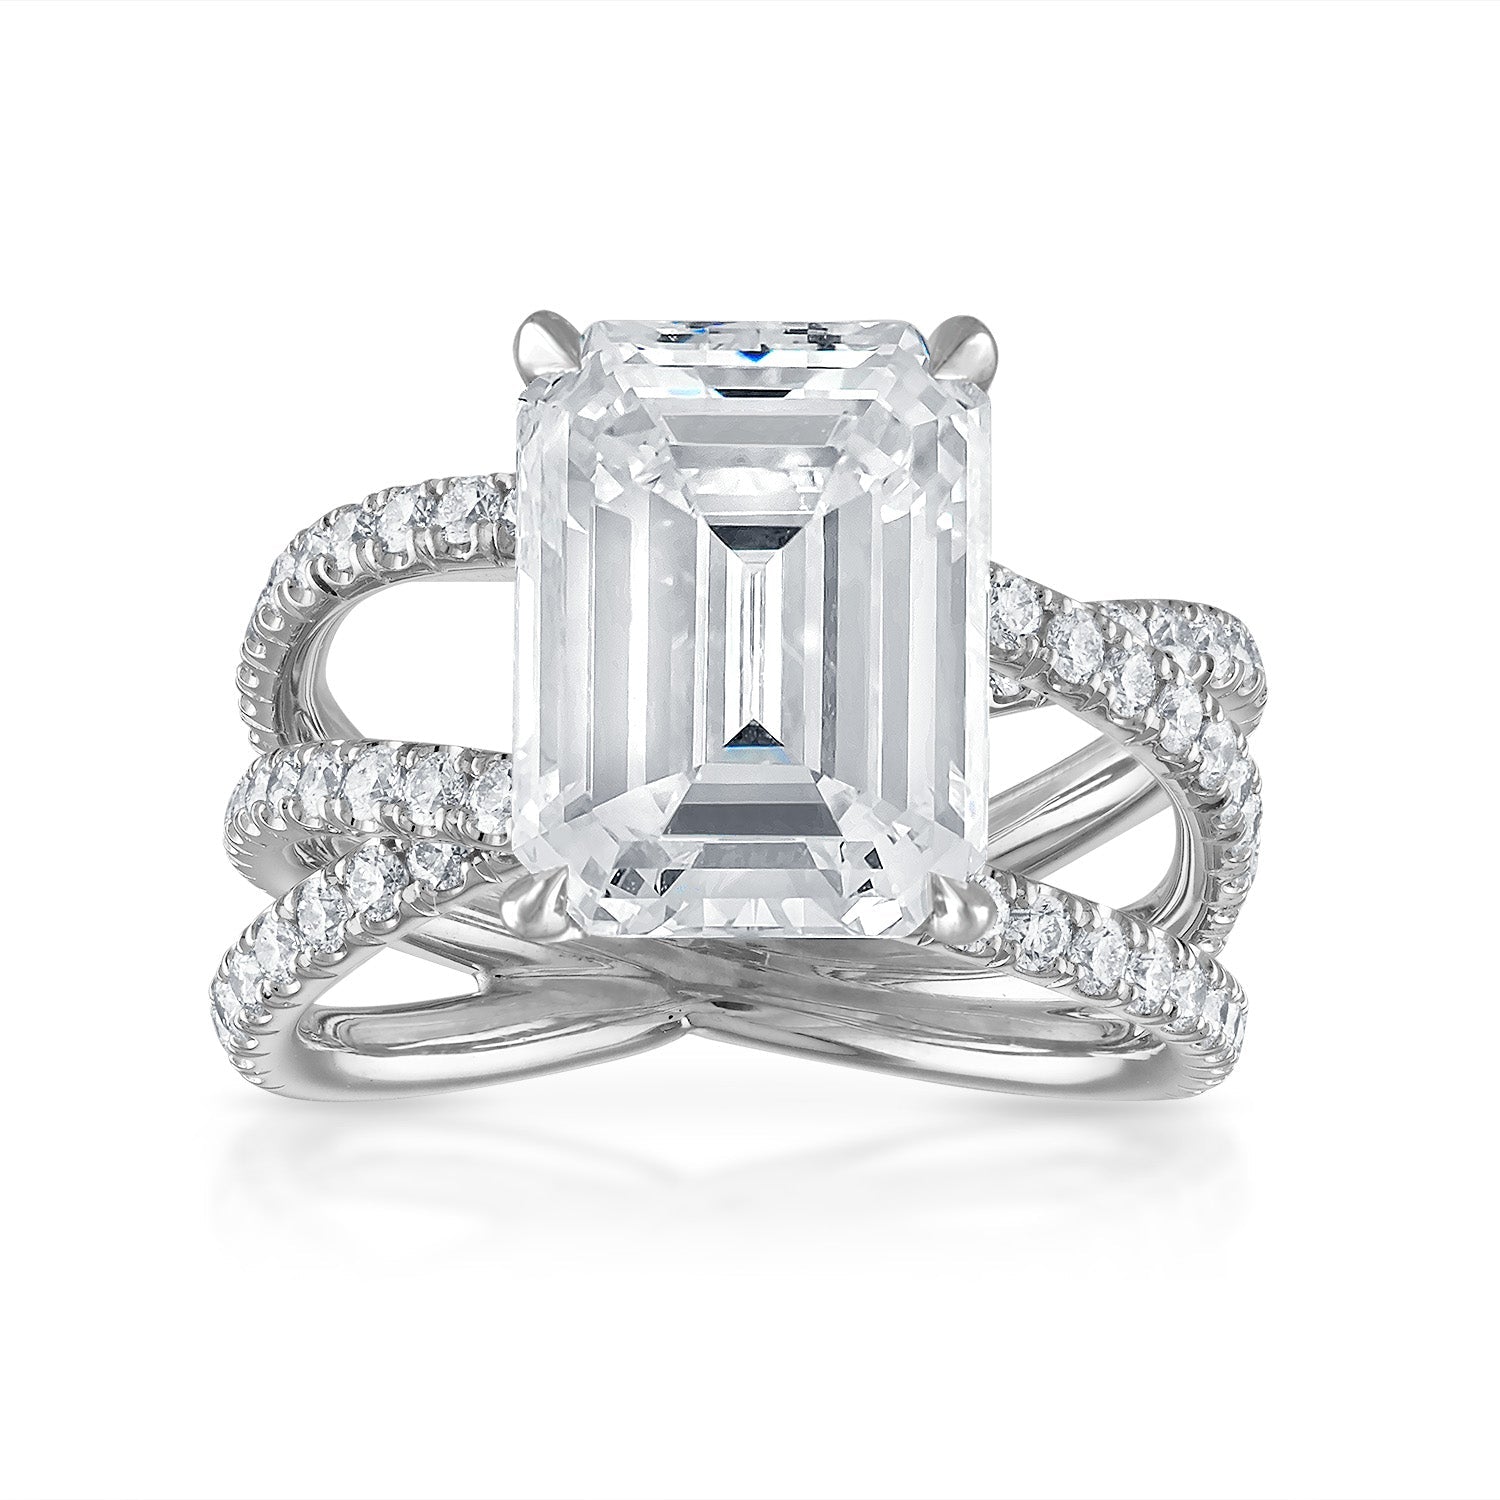 Emerald Criss Cross Engagement Ring in Platinum